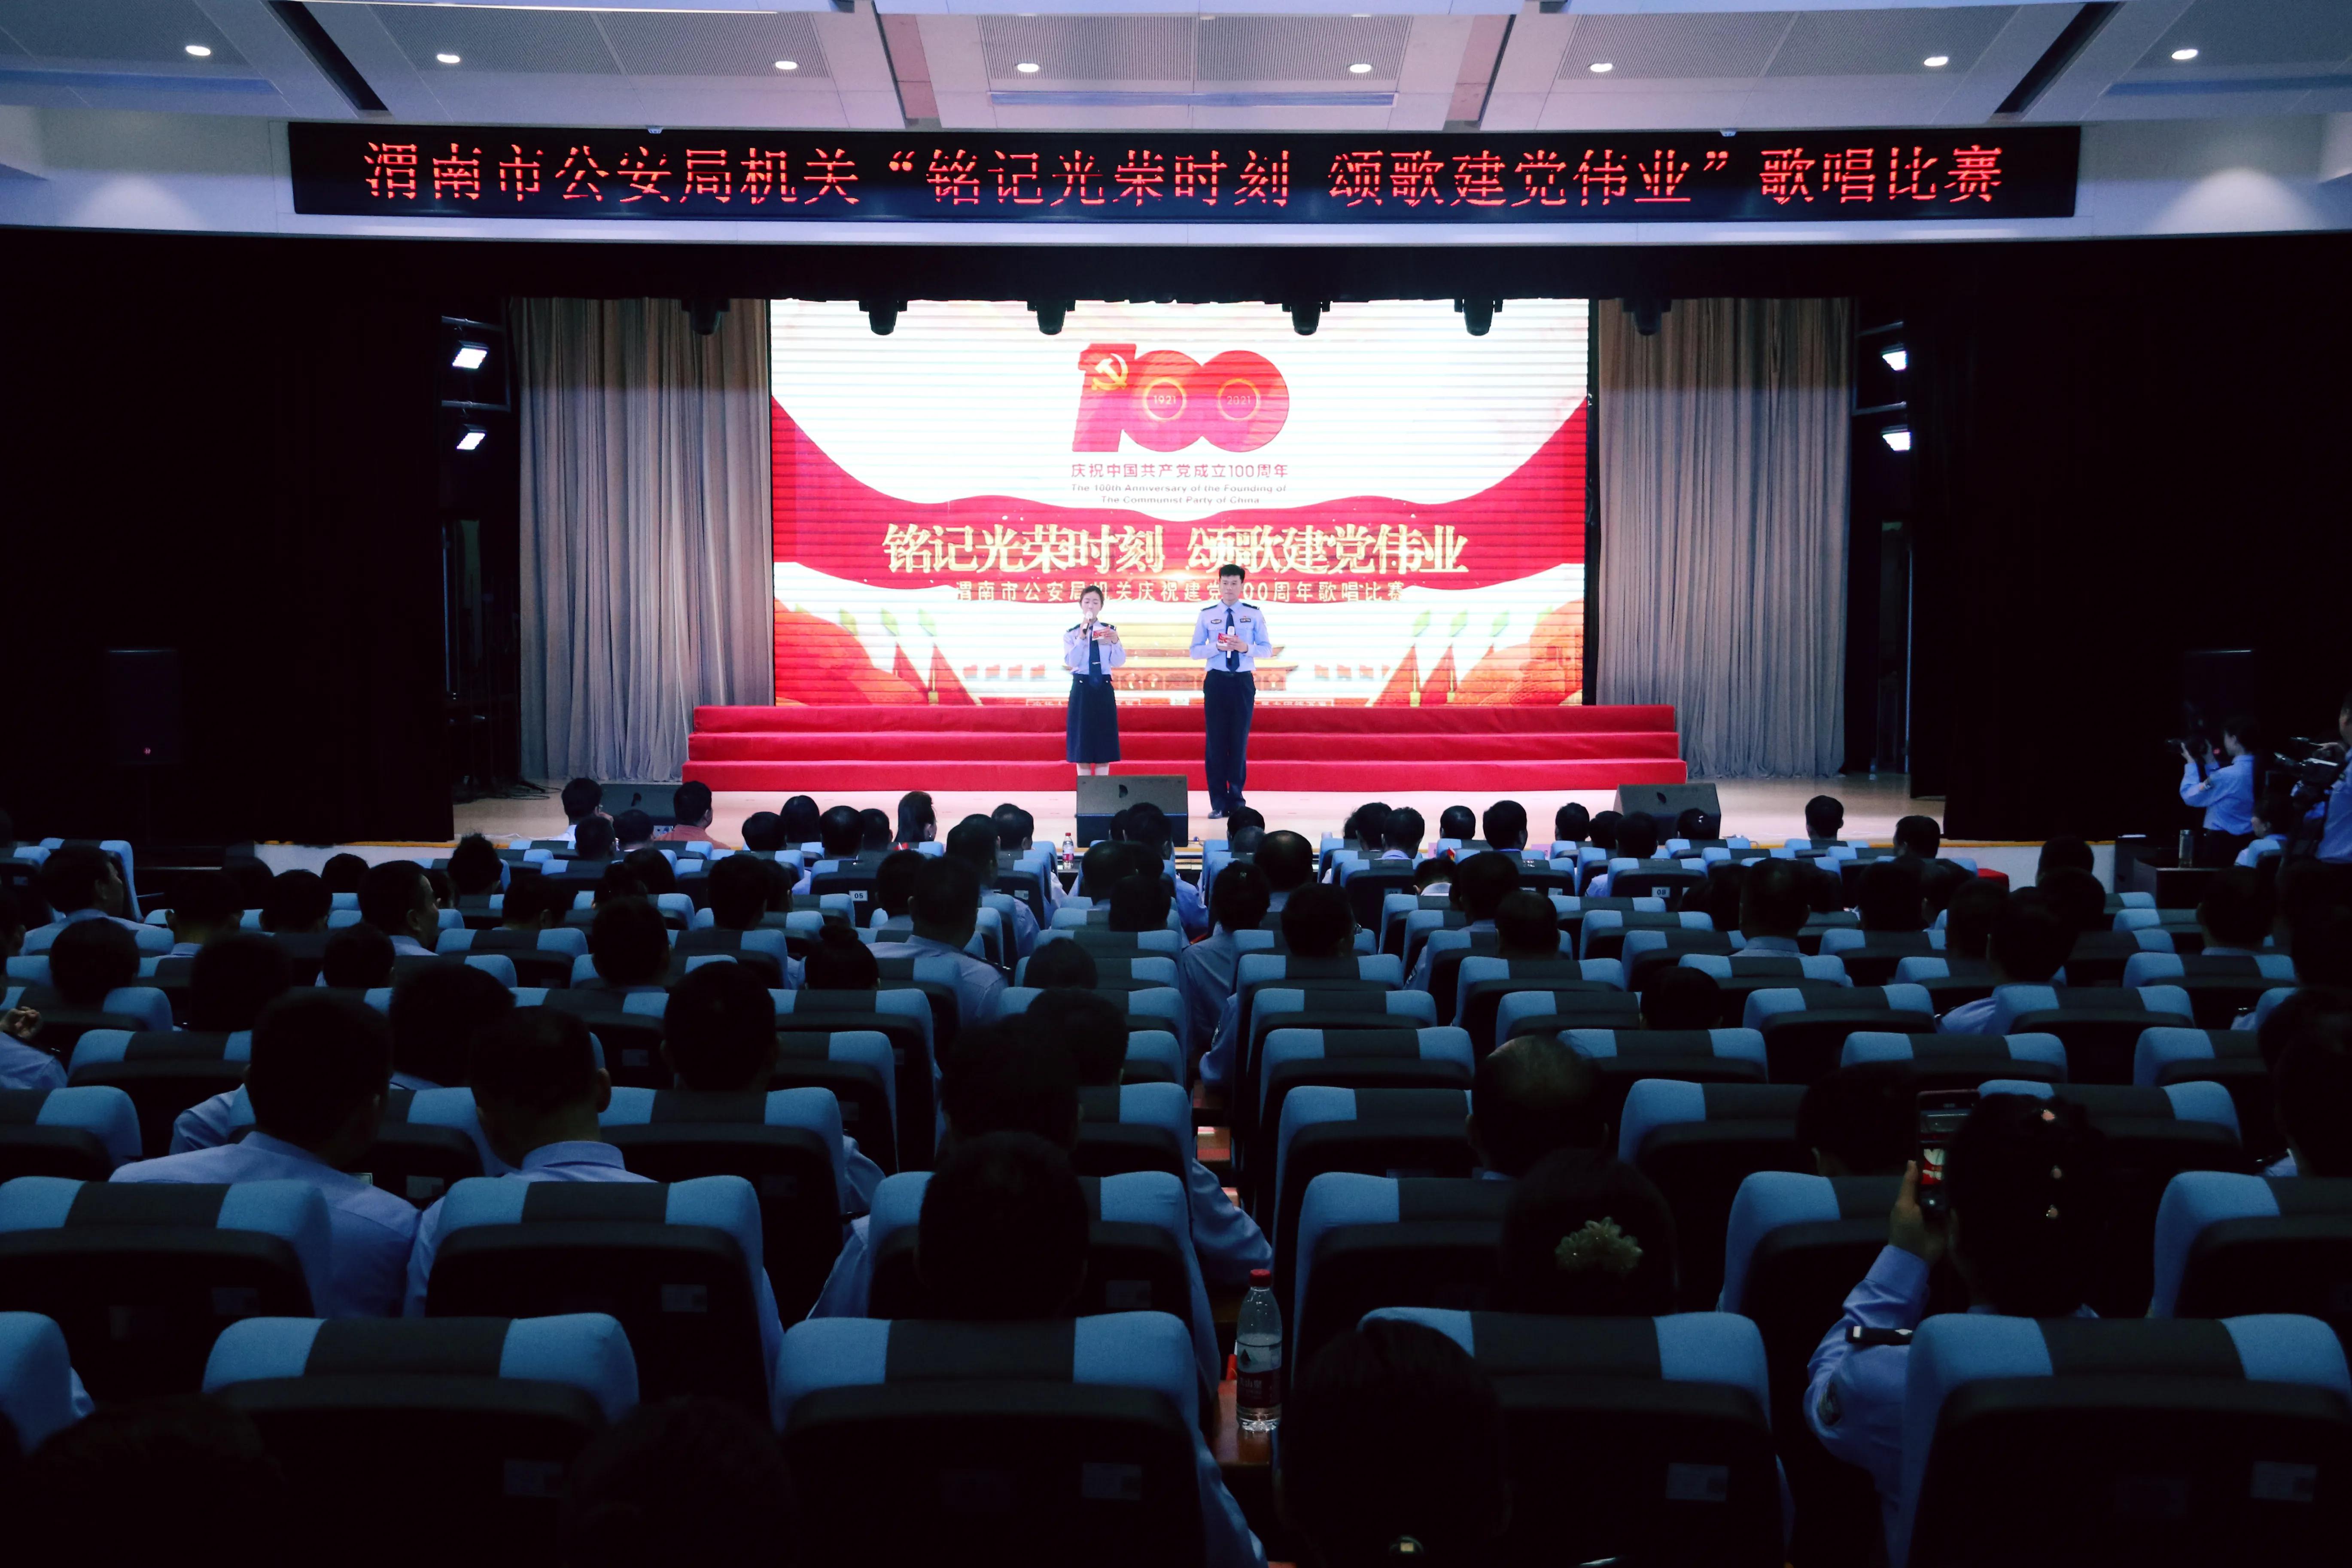 渭南市公安局机关举办“铭记光荣时刻·颂歌建党伟业”主题歌唱比赛